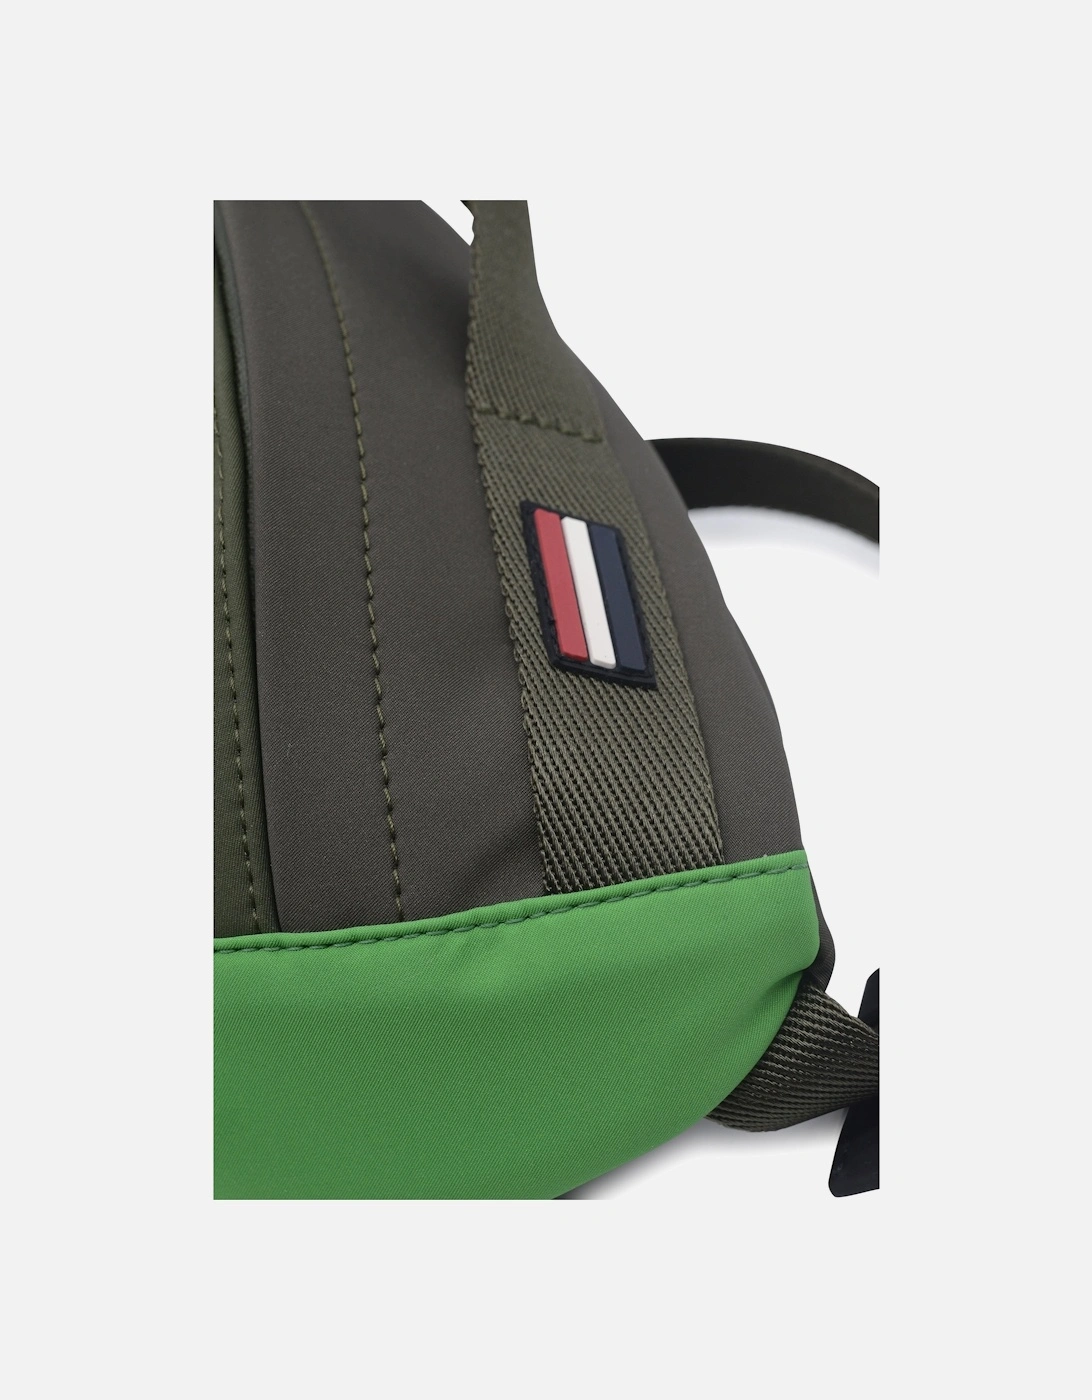 Belt Bag Green